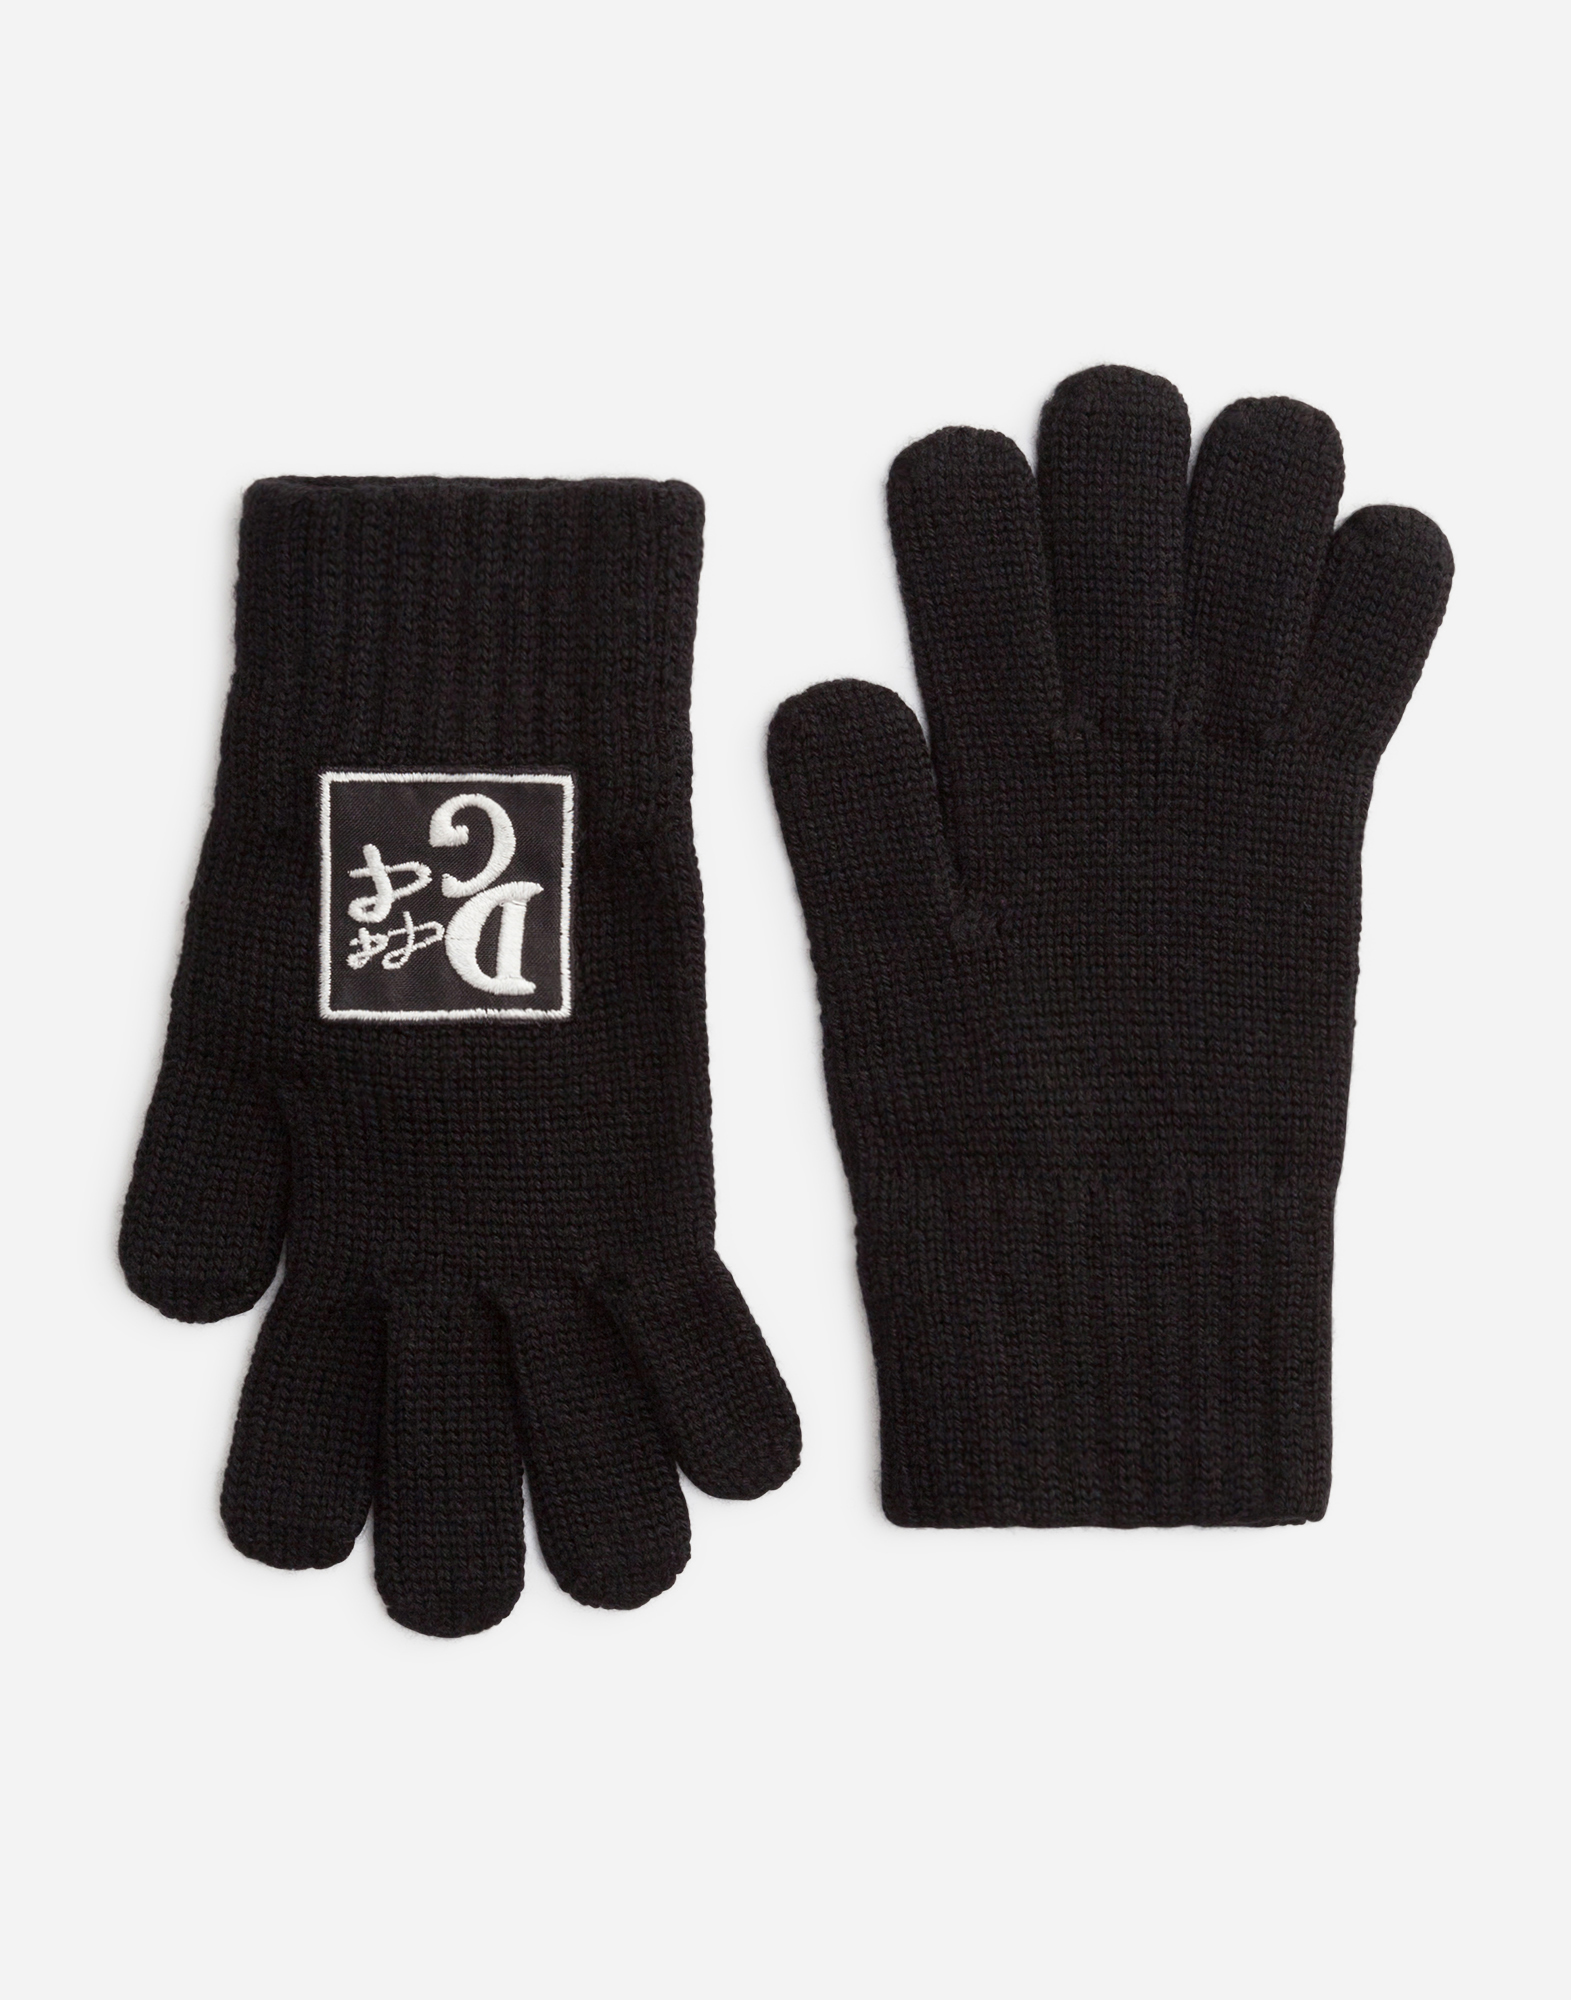 Dolce & Gabbana Kids' Knit Gloves With Logo Patch